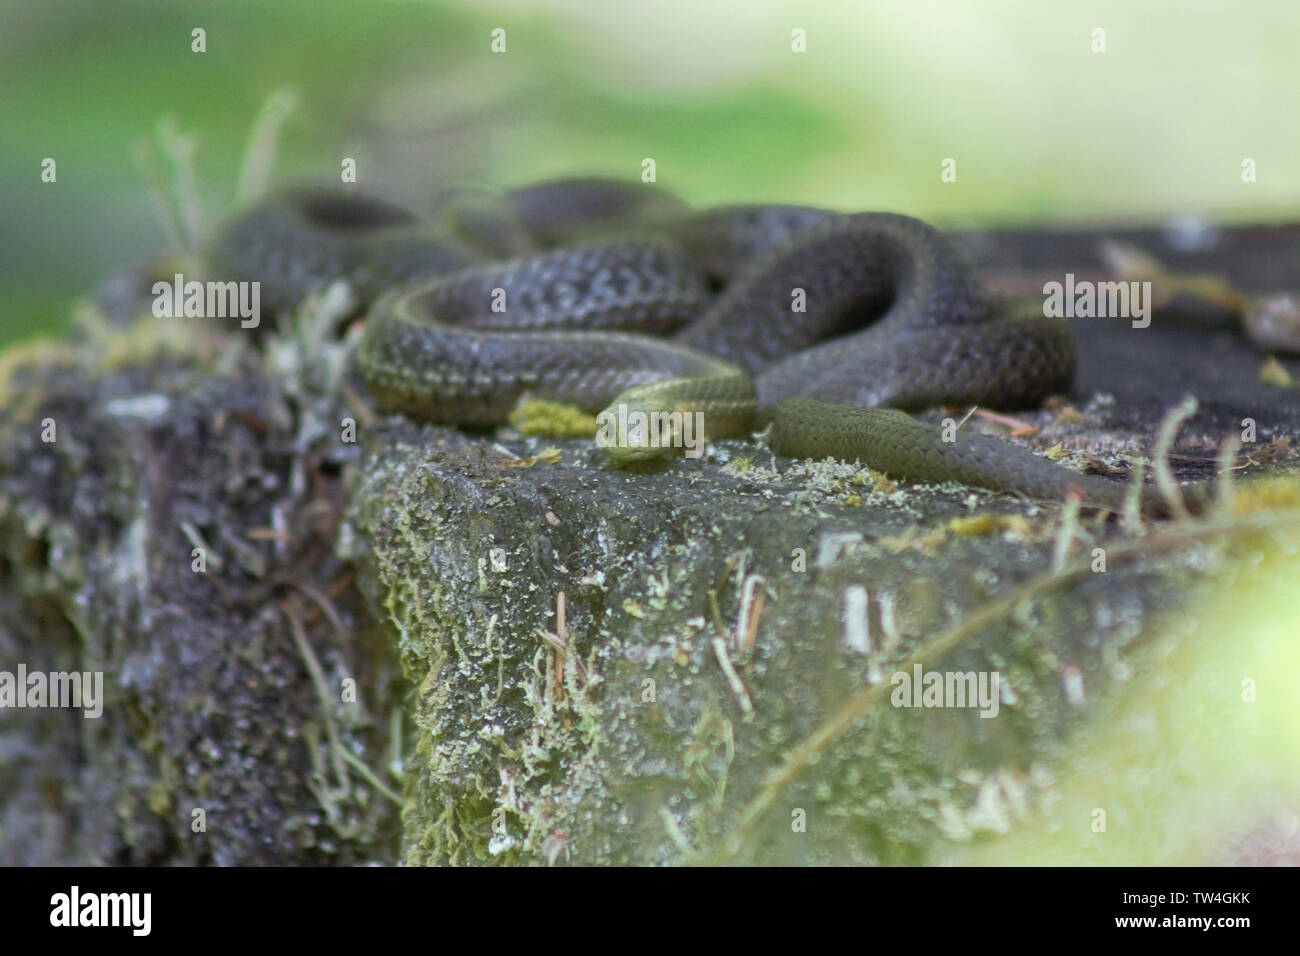 Garter serpientes tomando sol en un viejo tocón de árbol. Foto de stock